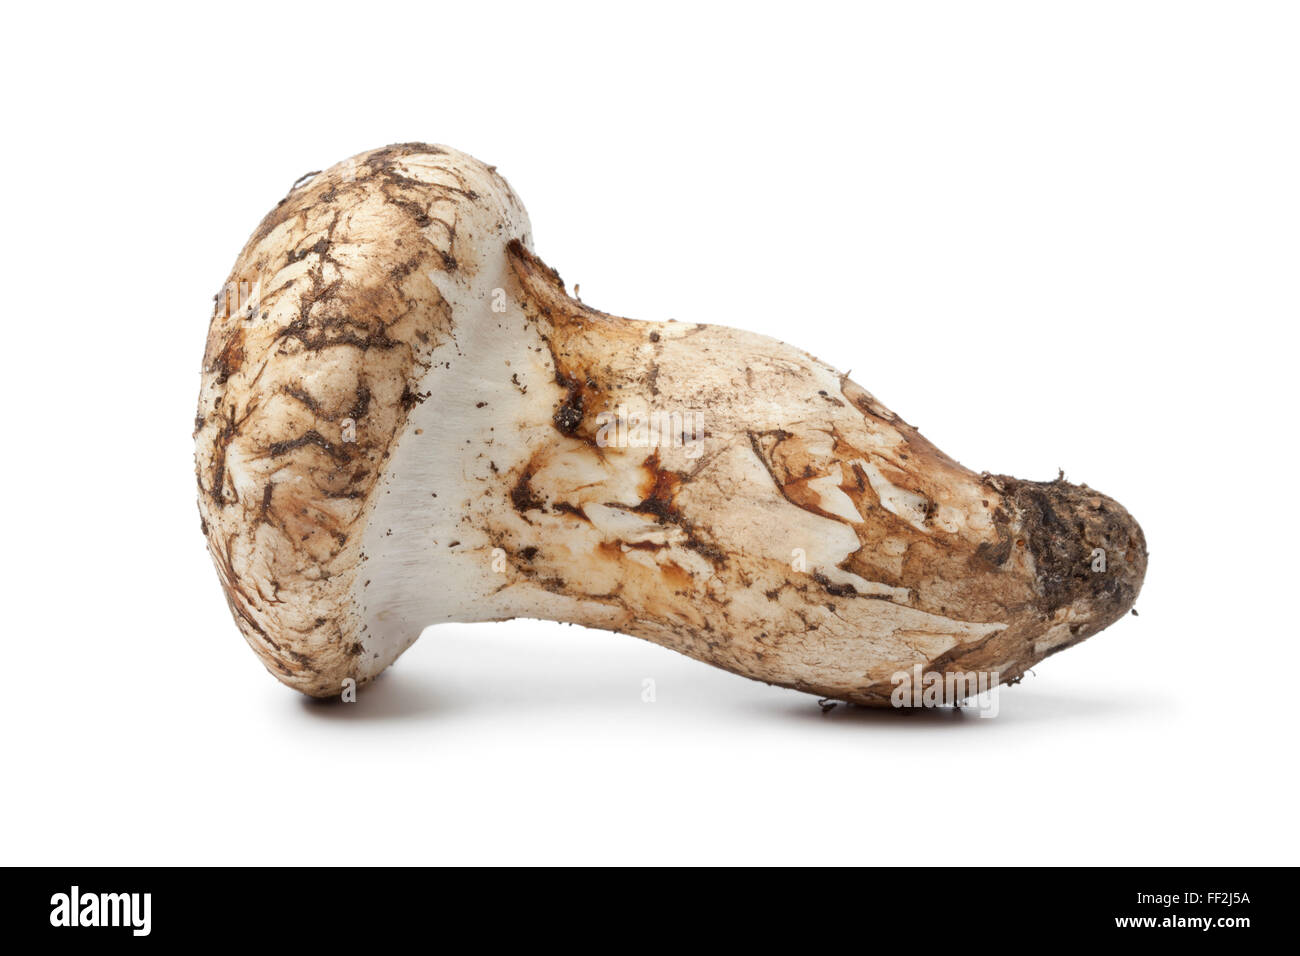 Whole single fresh raw Matsutake mushroom on white background Stock Photo